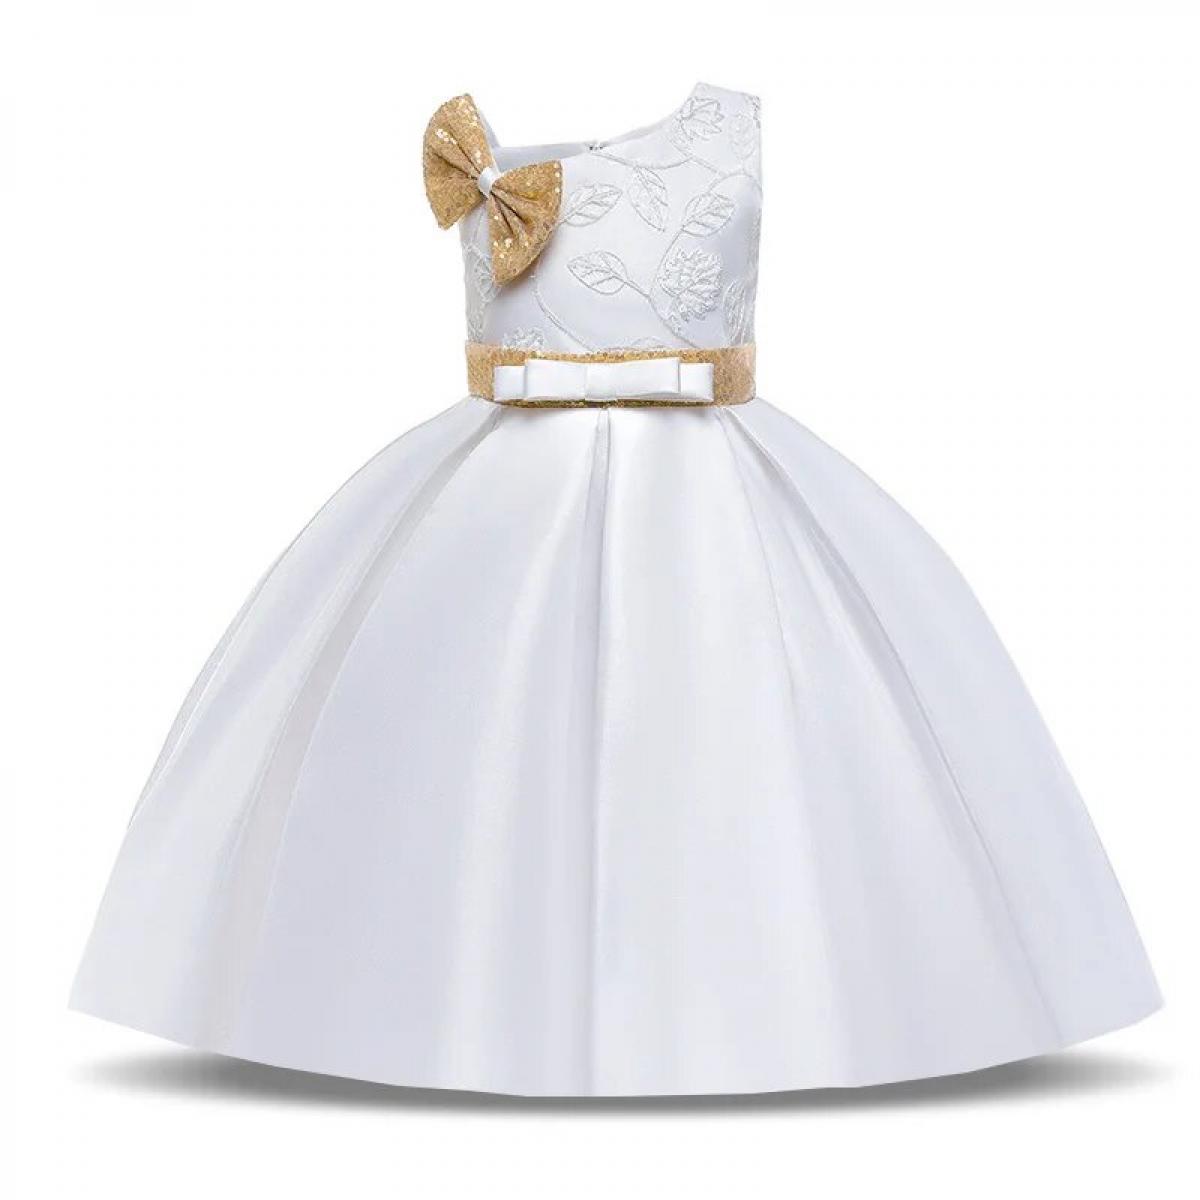 Blanco Simple niñas lentejuelas arco niños princesa vestido niños ropa elegante flor bordado fiesta de cumpleaños boda Go